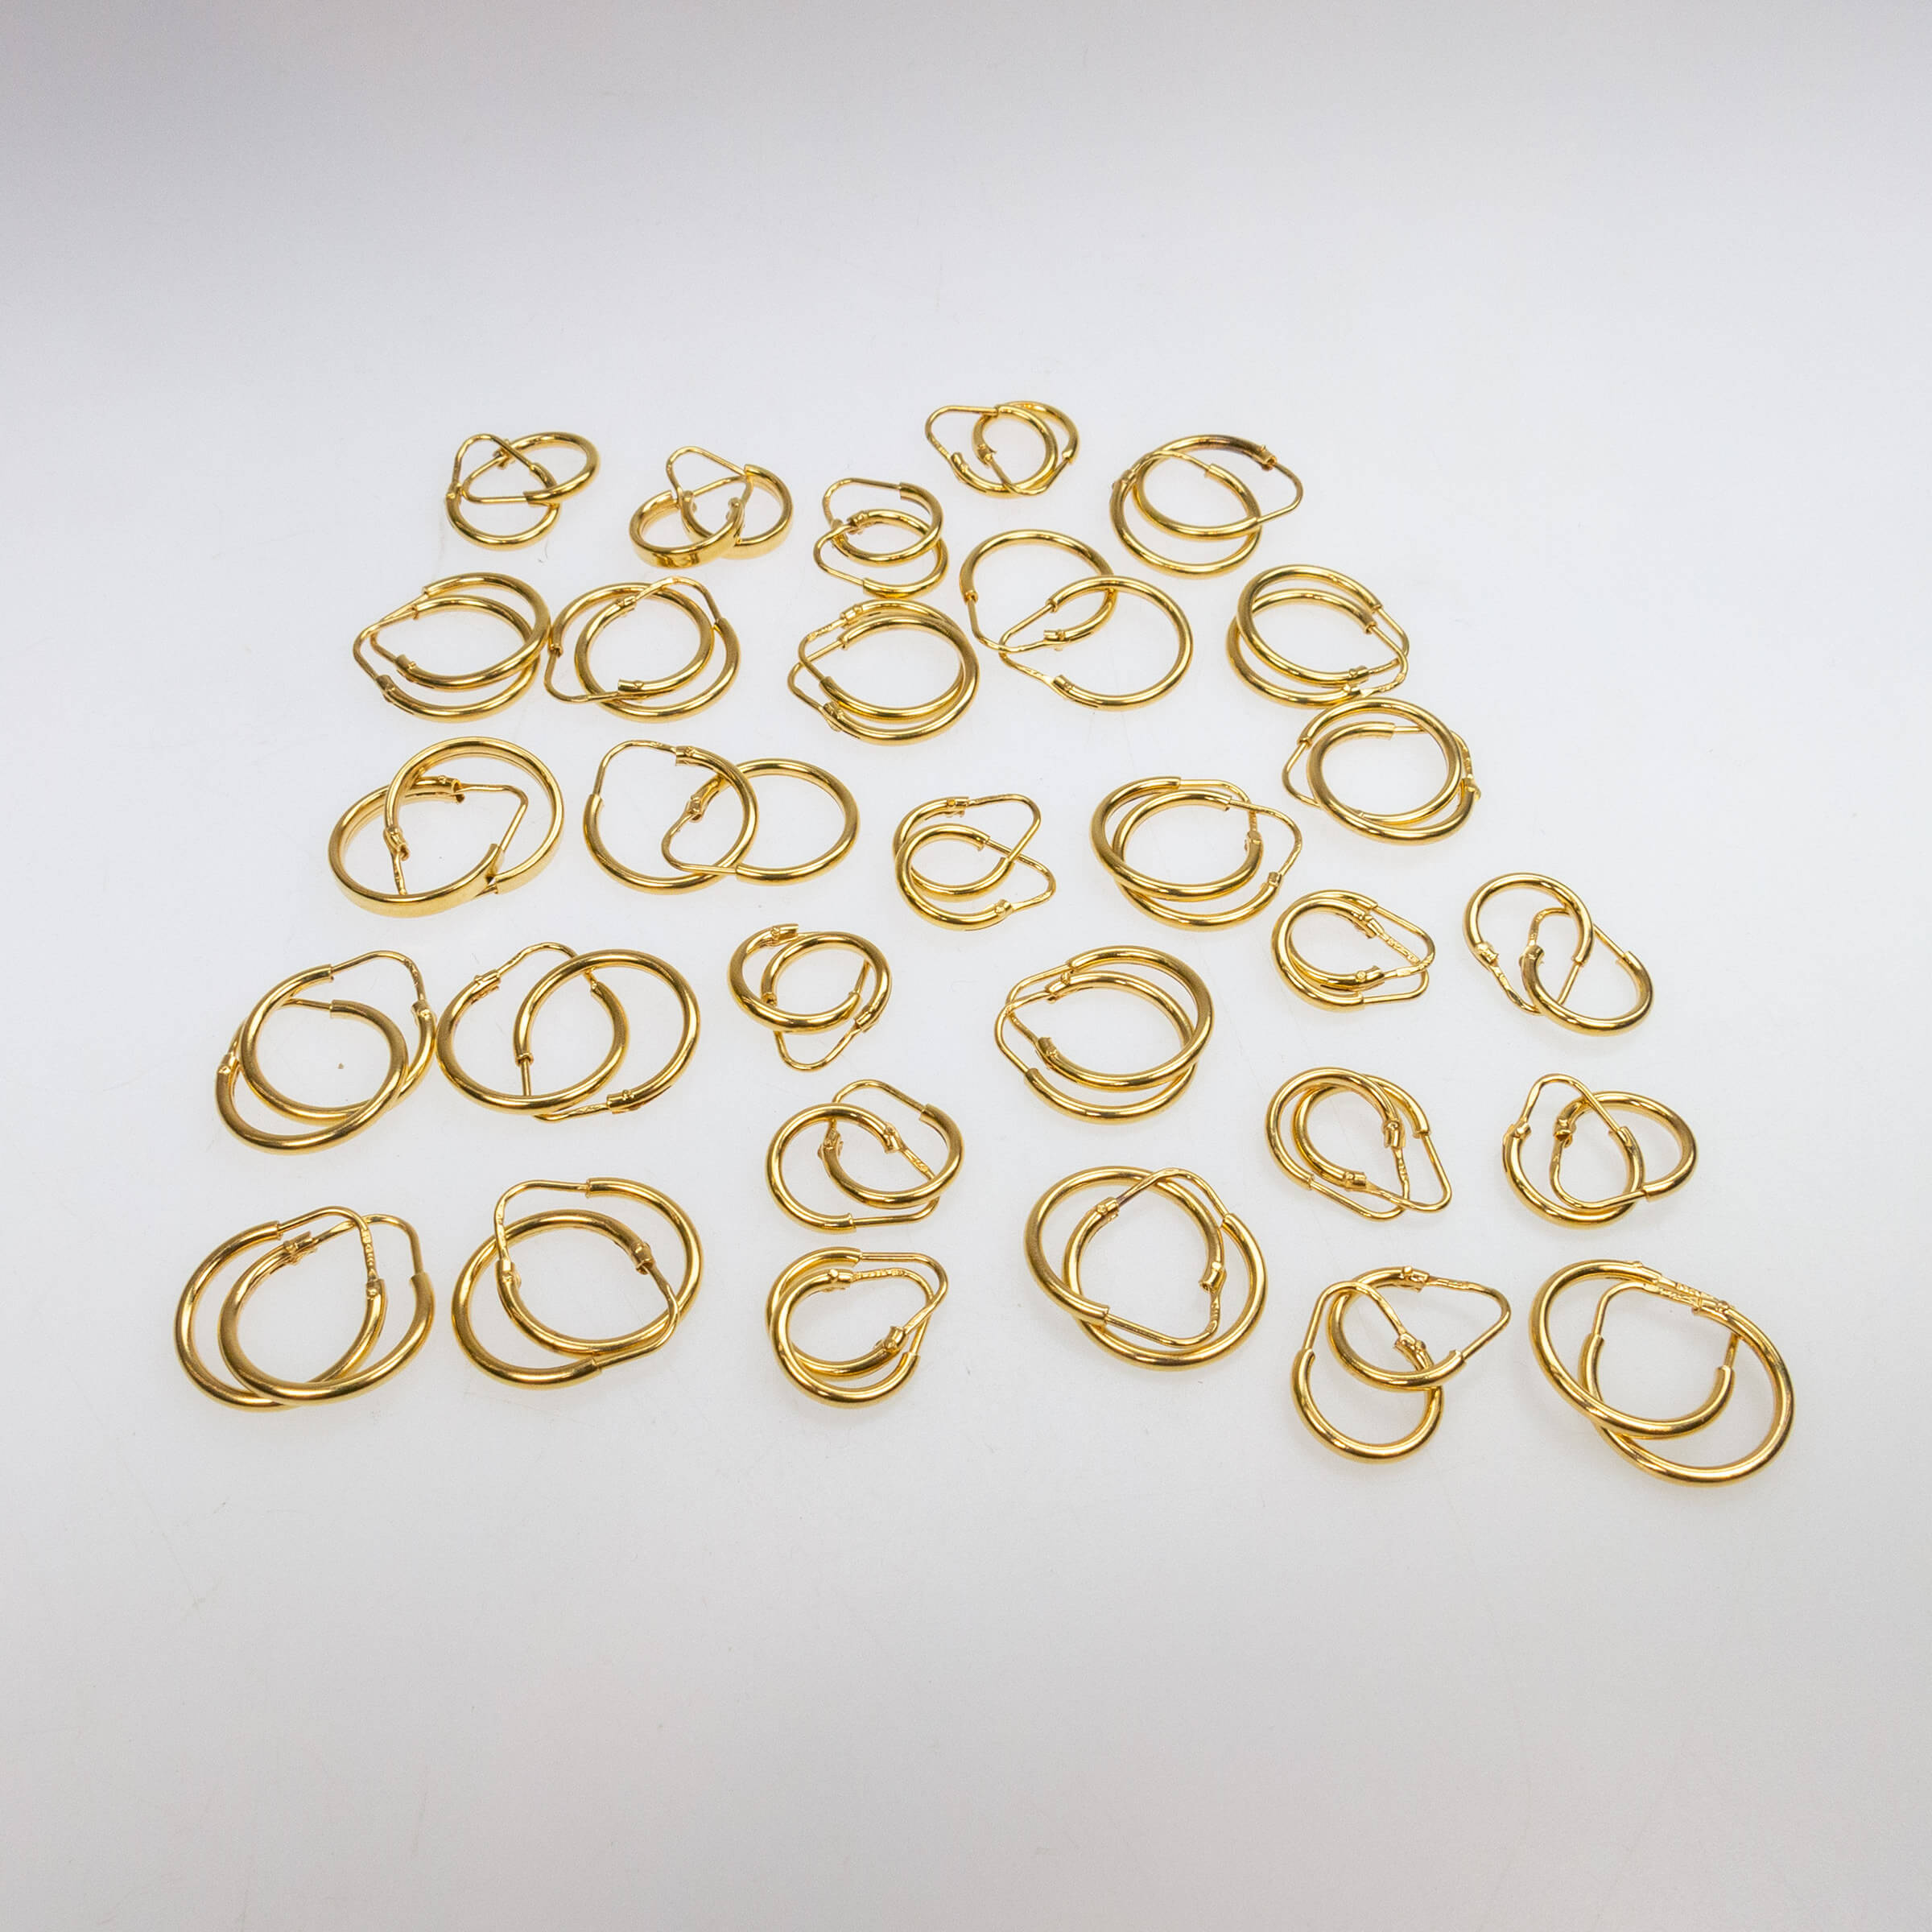 30 Pairs Of 18k Yellow Gold Hoop Earrings